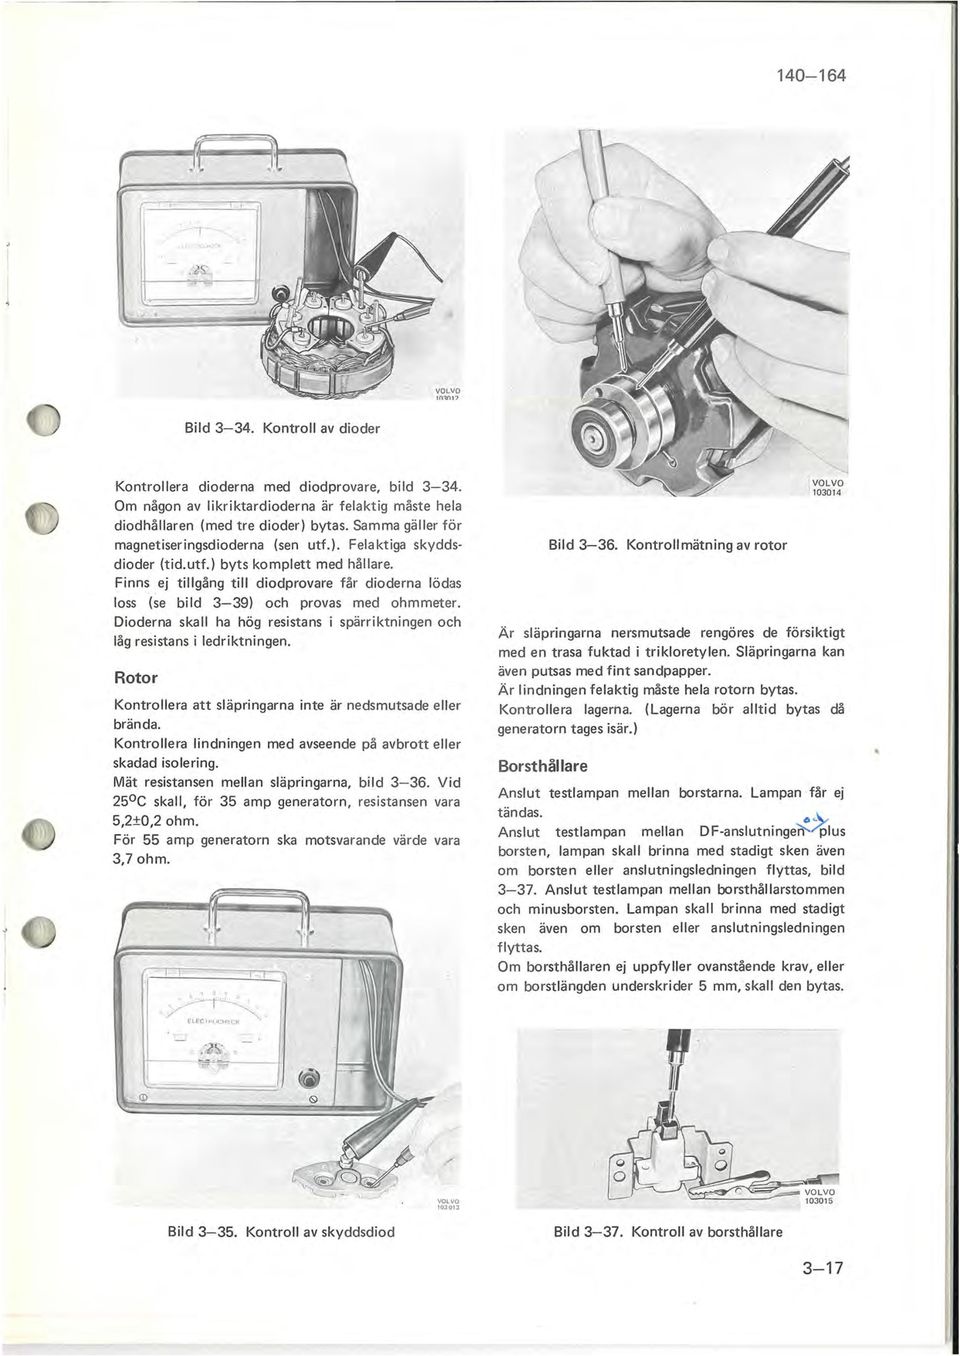 Finns ej tillgång till diodprovare får dioderna lödas loss (se bild 3-39) och provas med ohmmeter. Dioderna skall ha hög resistans i spärriktningen och låg resistans i ledriktningen.